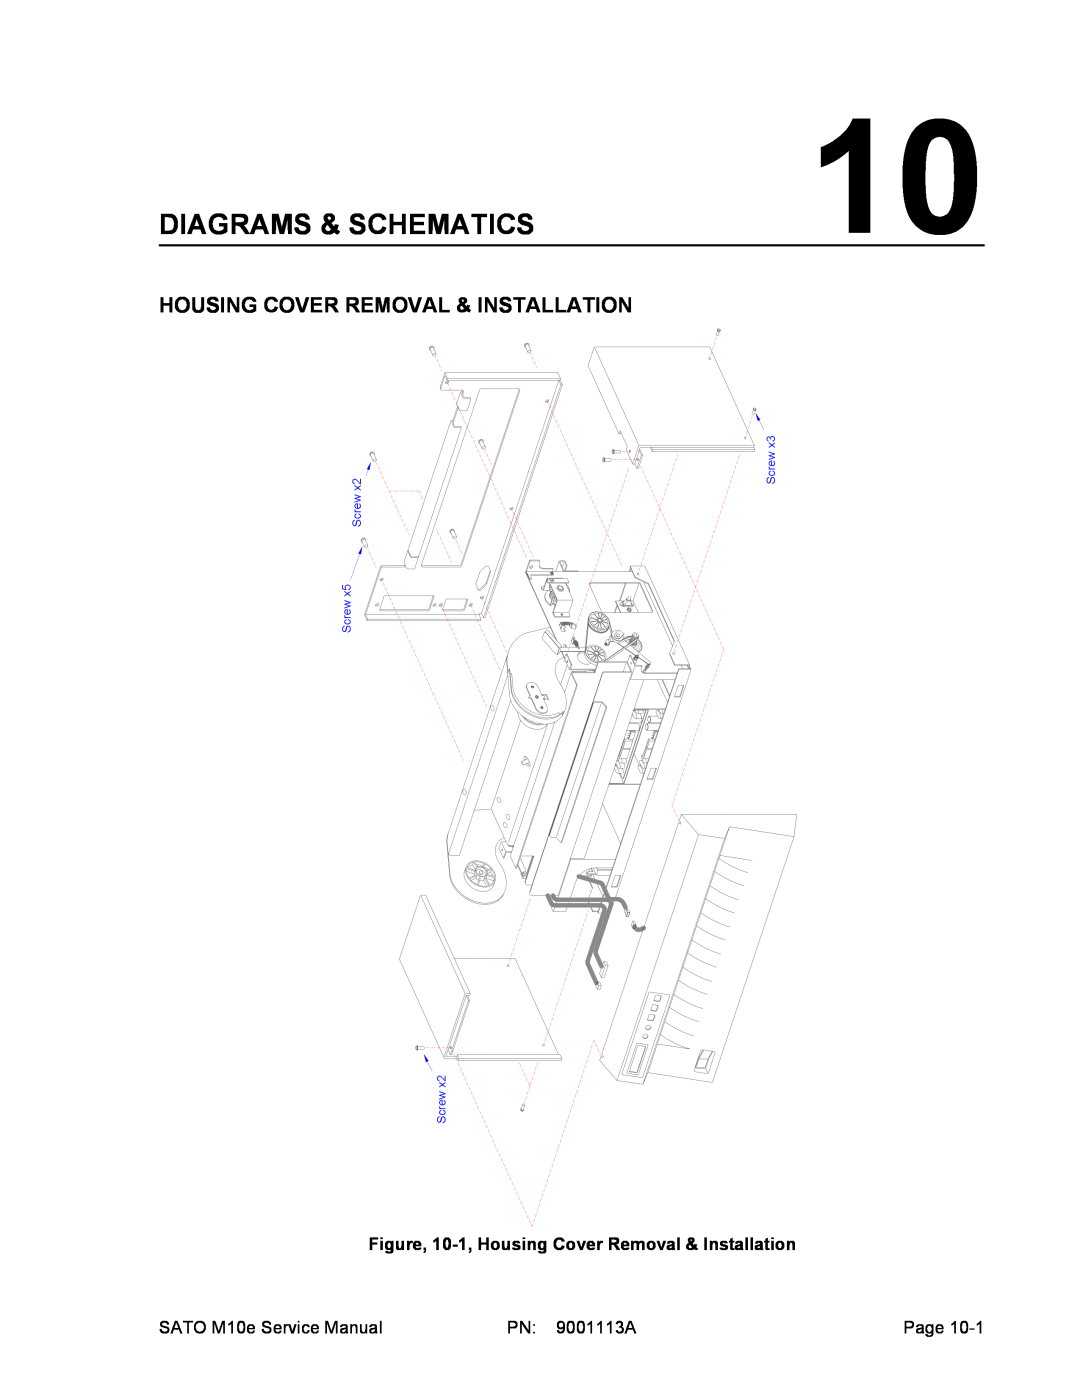 SATO 10e service manual Diagrams & Schematics, Housing Cover Removal & Installation, Screw Screw 